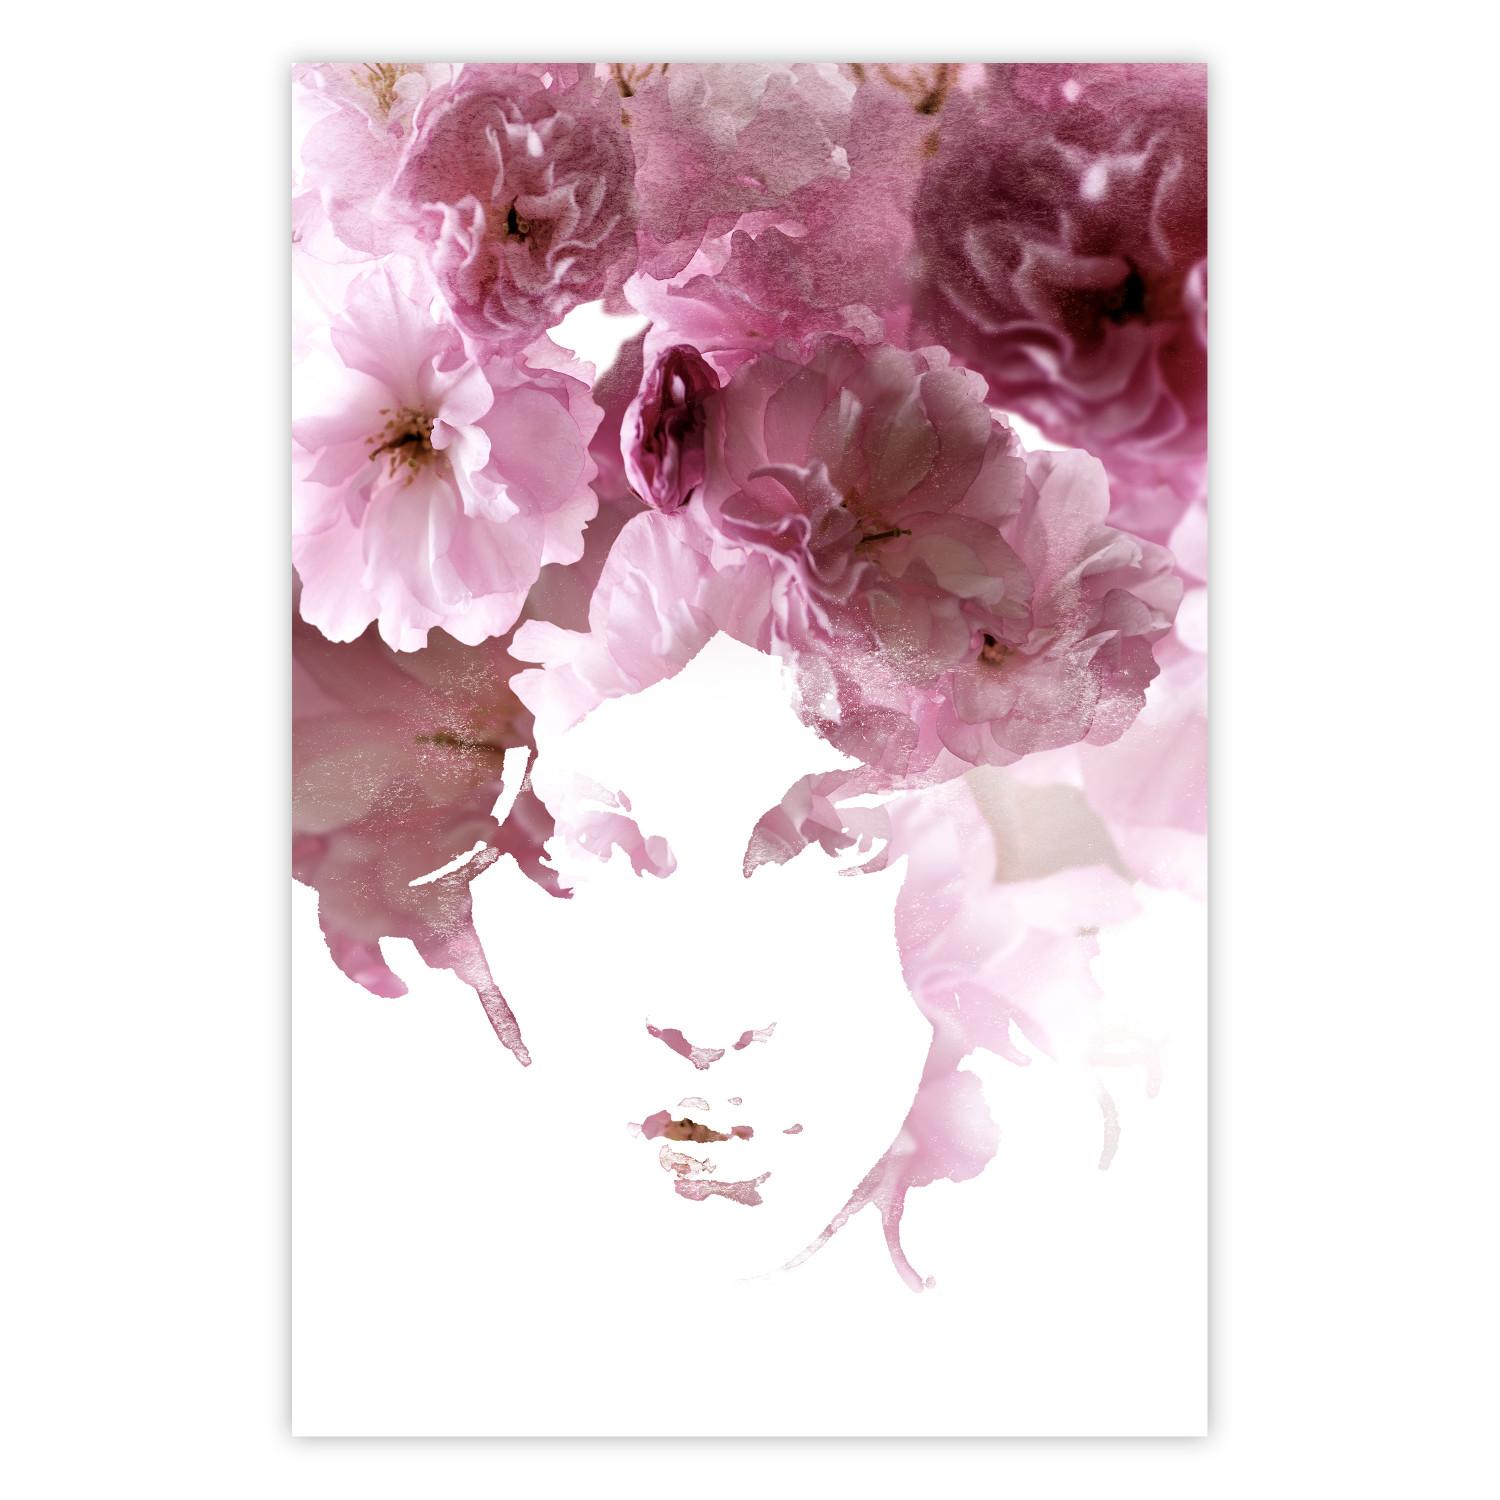 Cartel Mirada floral - retrato fantasioso del rostro compuesto por flores